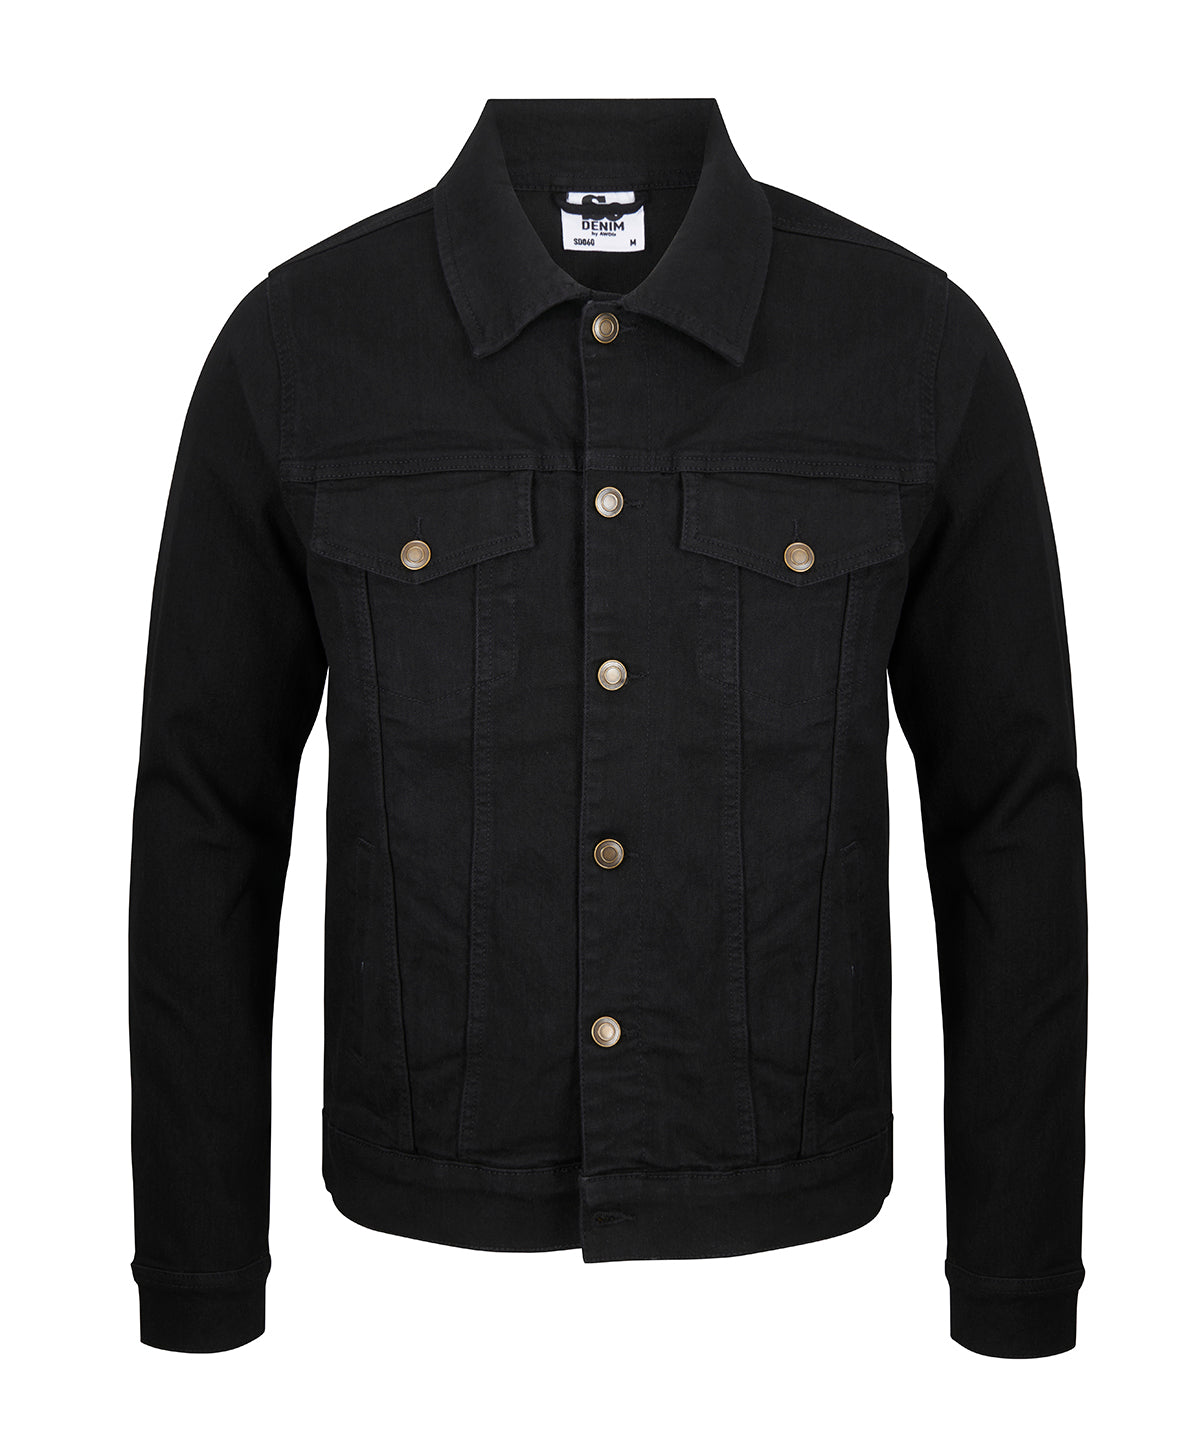 Personalised Jackets - Black AWDis So Denim Noah denim jacket